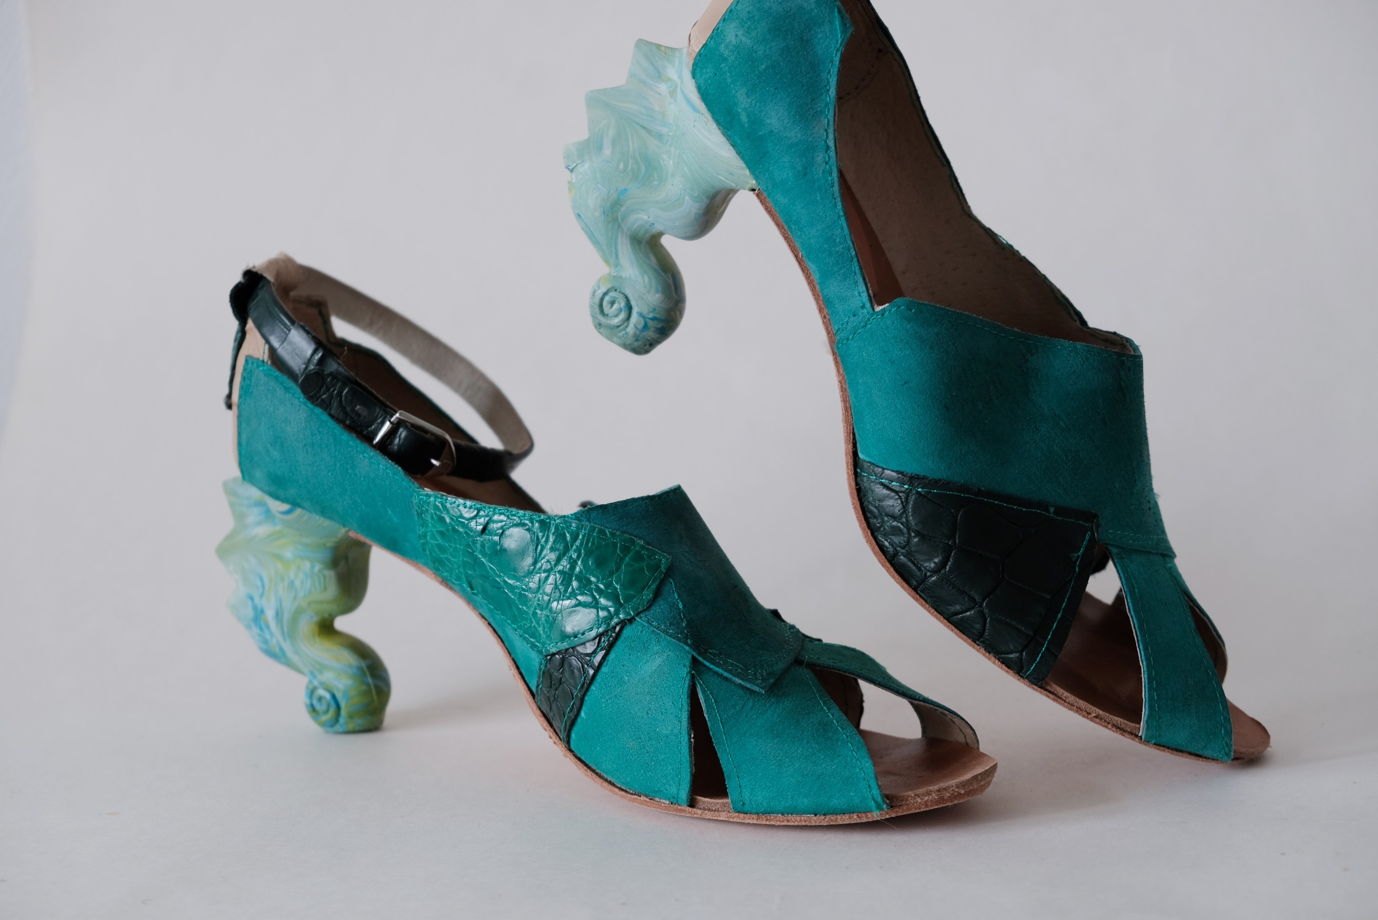 Зеленые туфли с динамическими каблуками "морской конек" и вставками из кожи крокодила. Размер 41.5